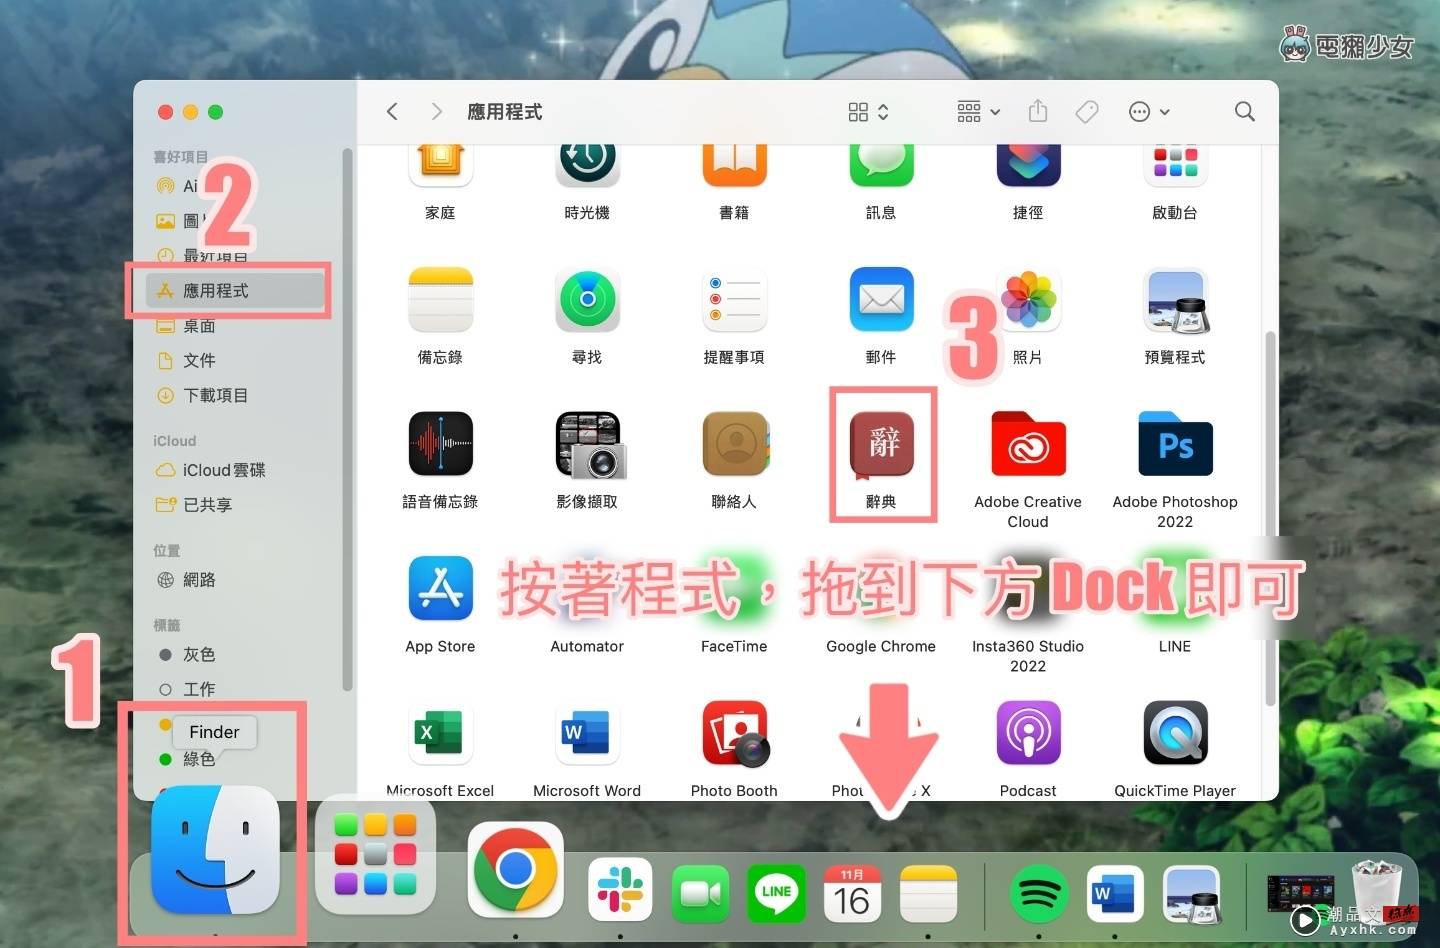 MacBook 小技巧 让你更了解你的 Dock！双萤幕 Dock 乱跑也不怕 数码科技 图4张